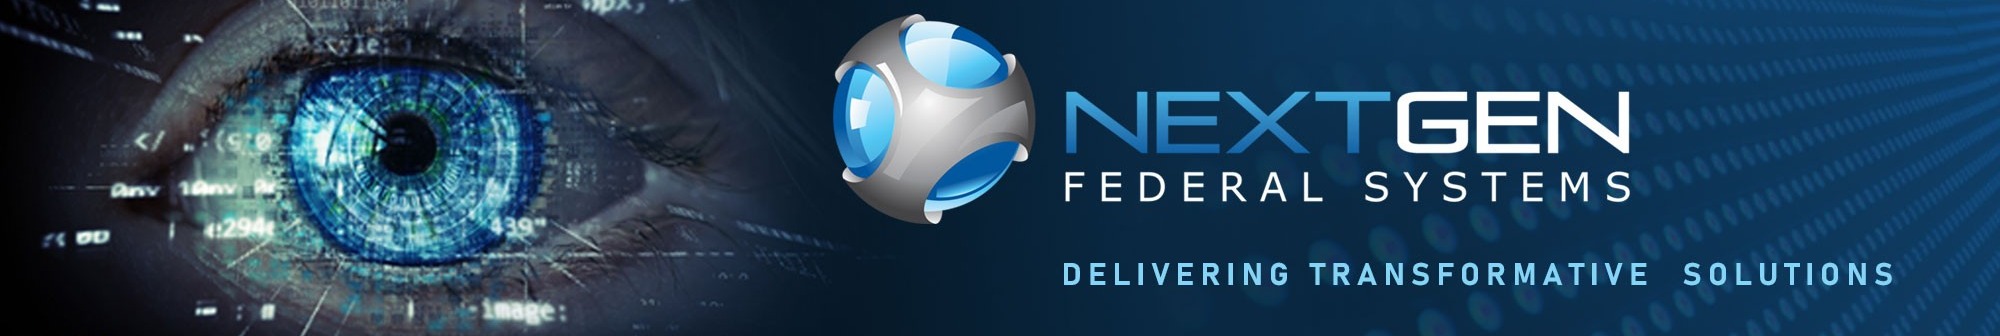 NextGen Federal Systems background